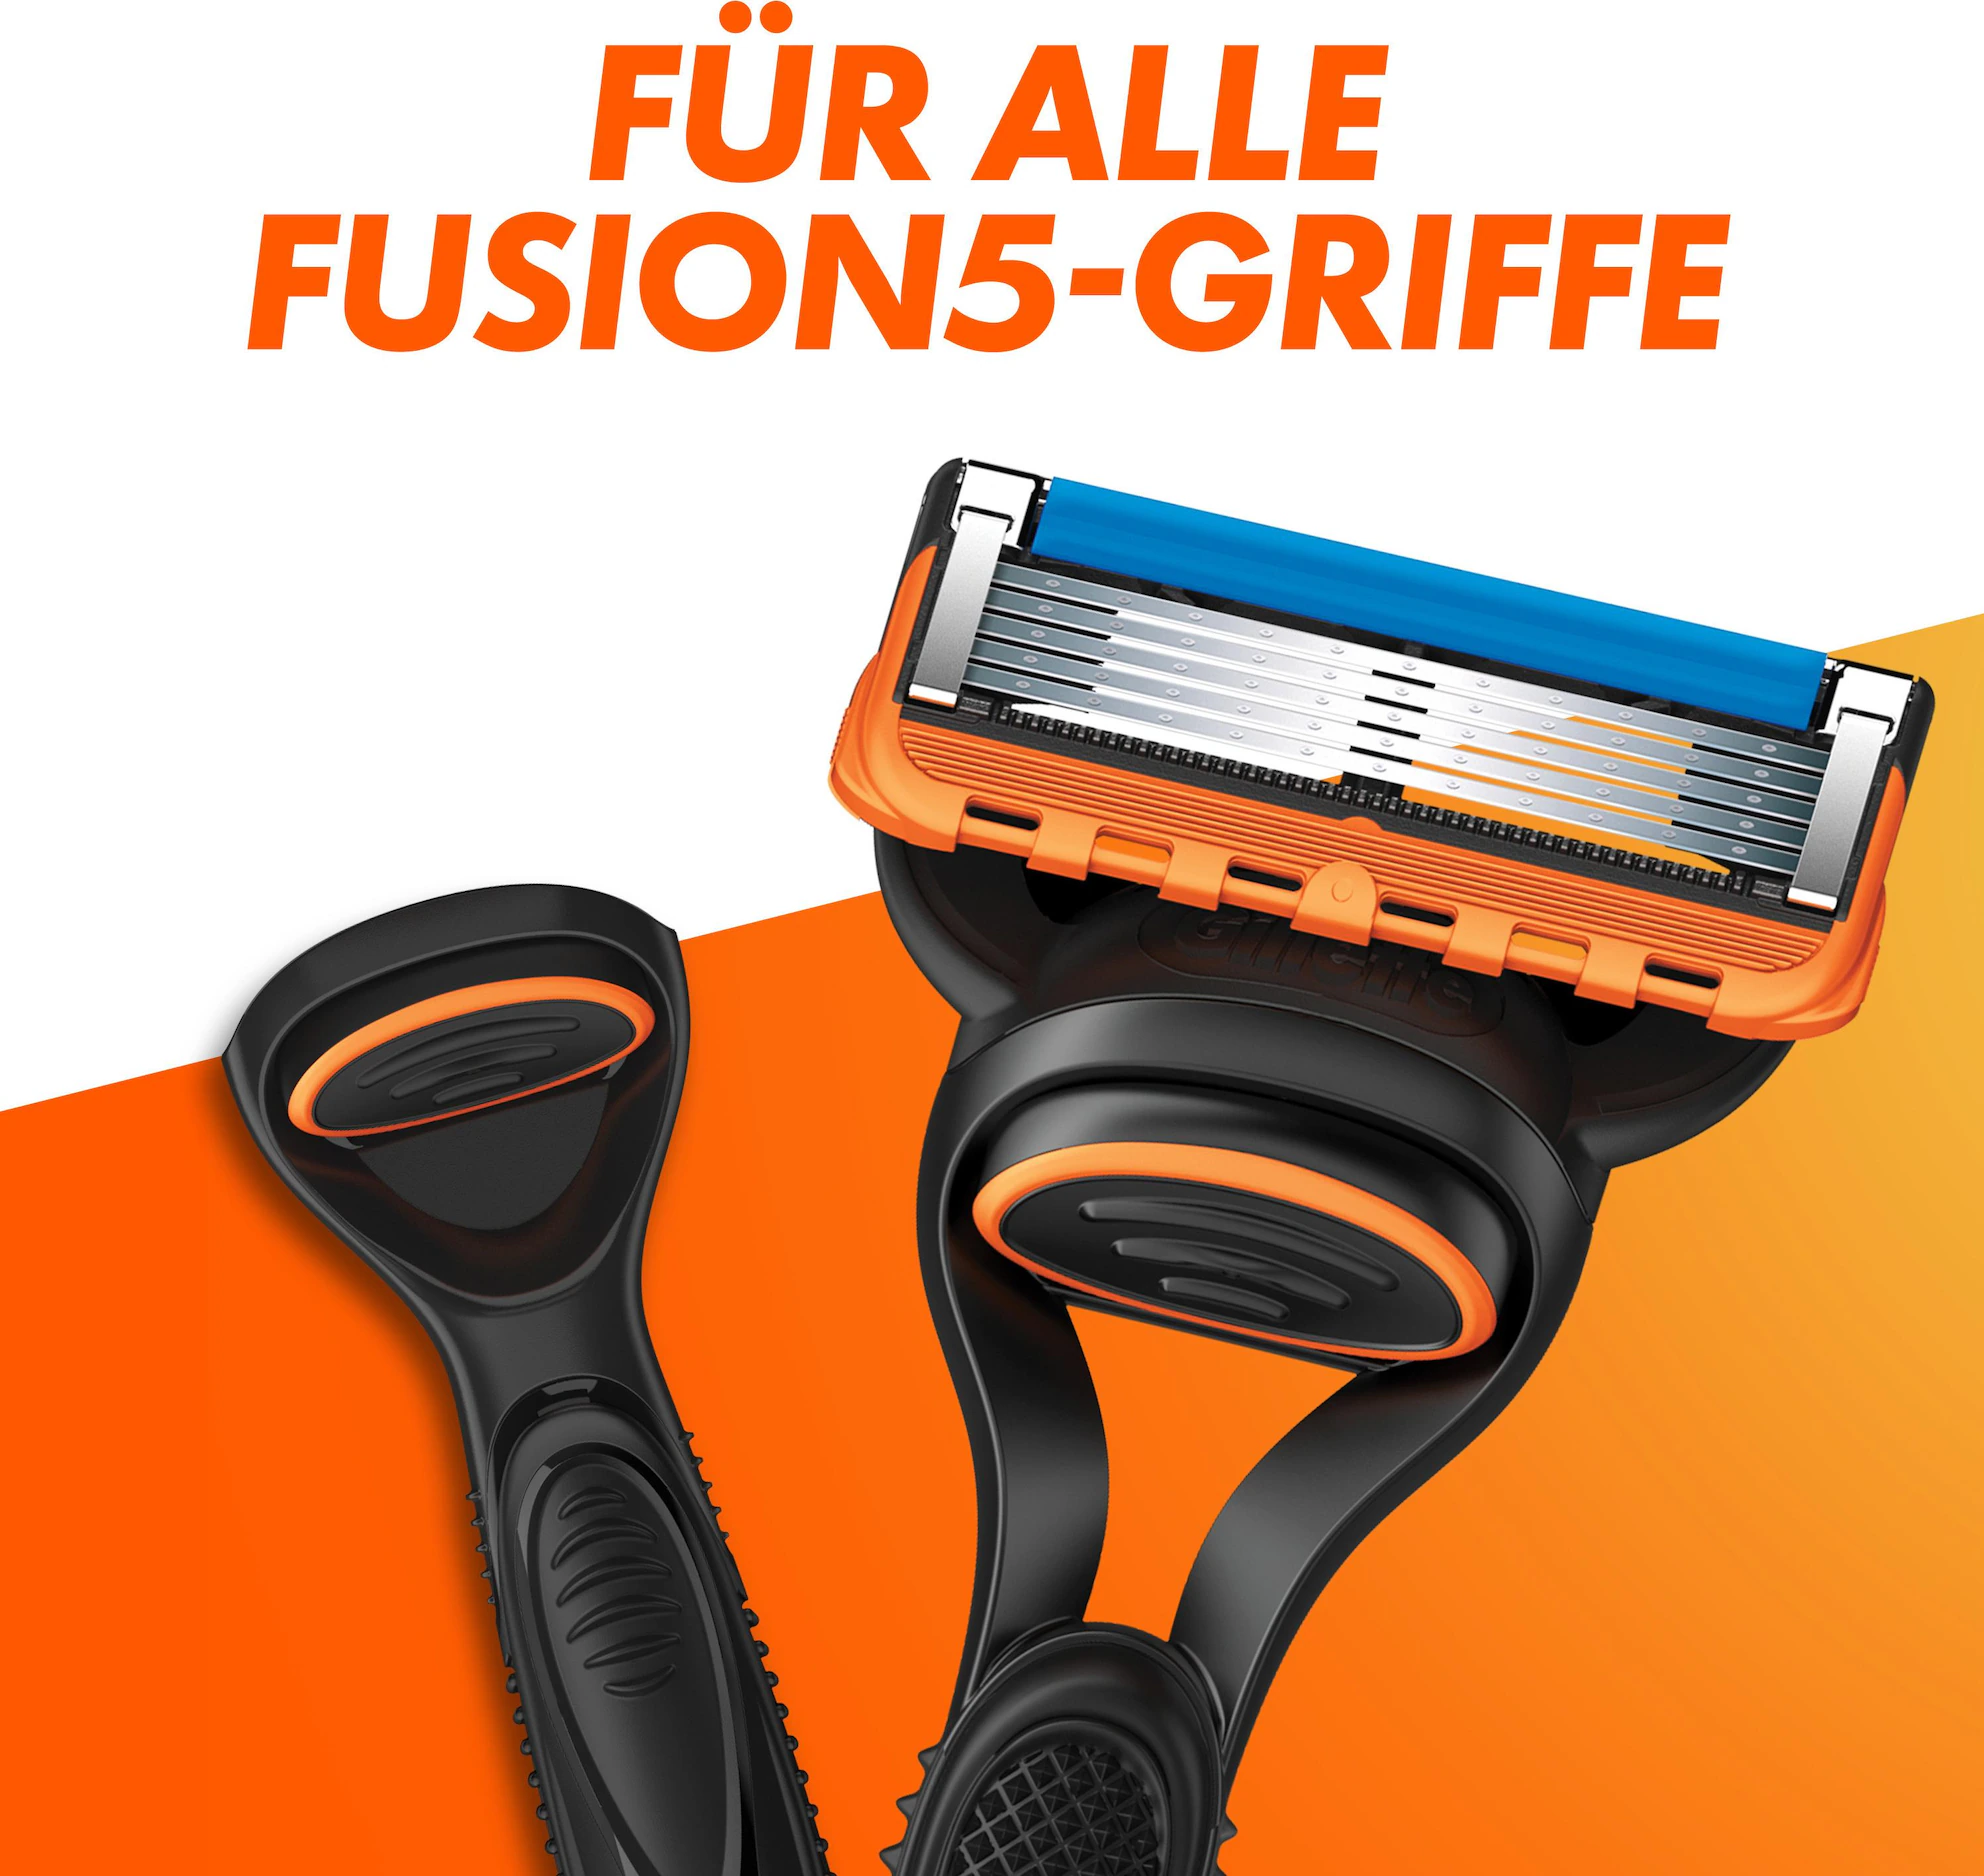 Gillette Fusion 5 Blades 8er Pack